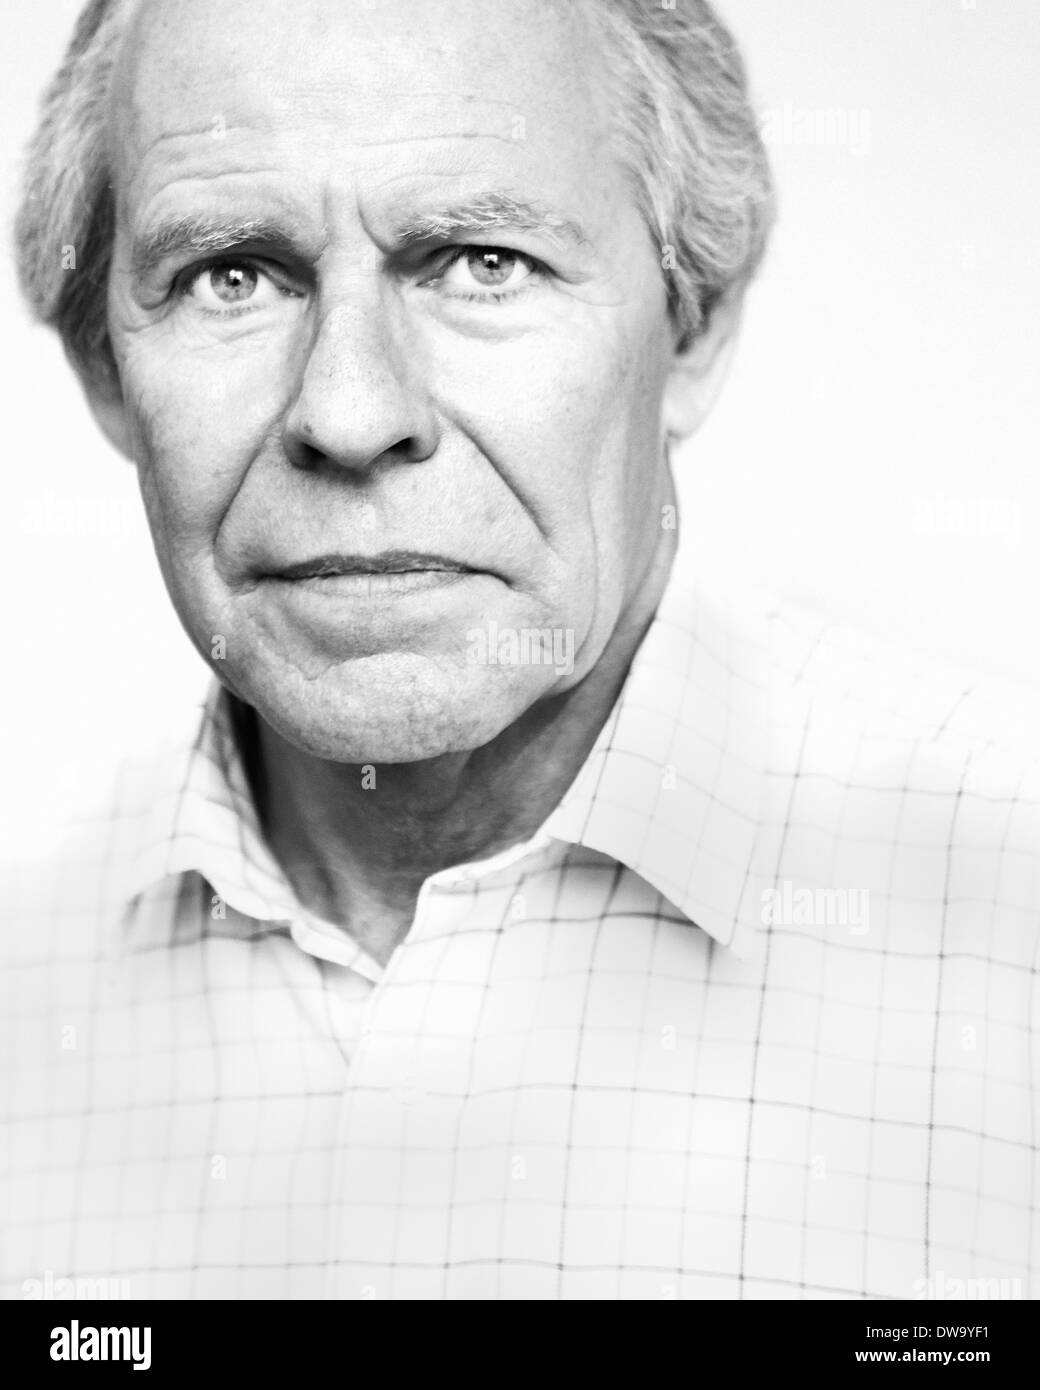 Black and white studio portrait of serious senior man Stock Photo